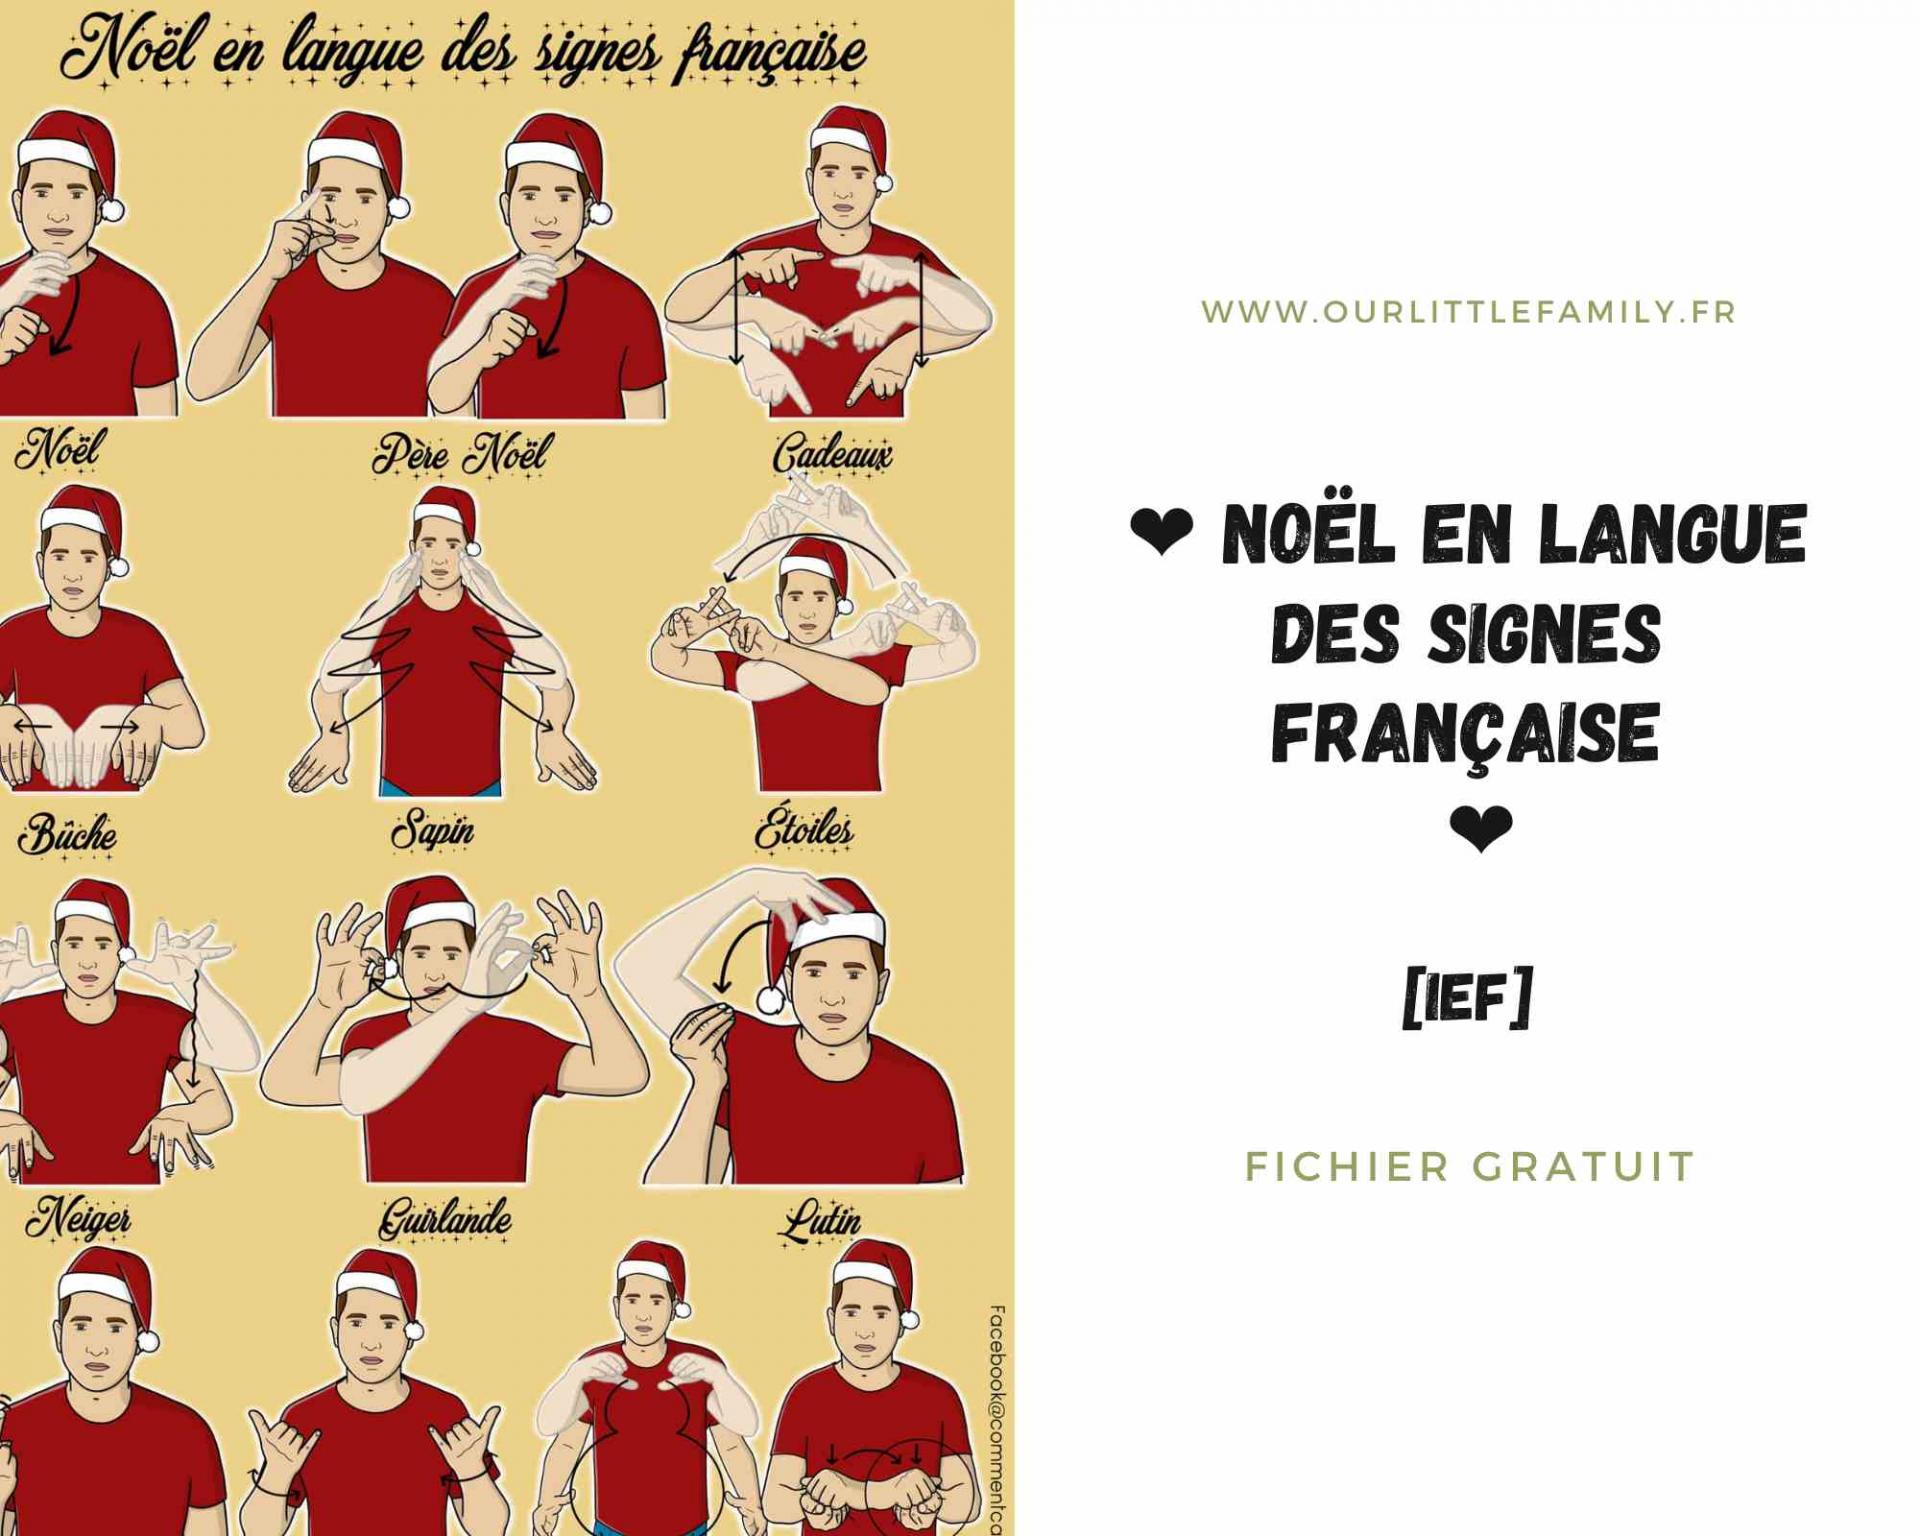 Noel en langue des signes francaise